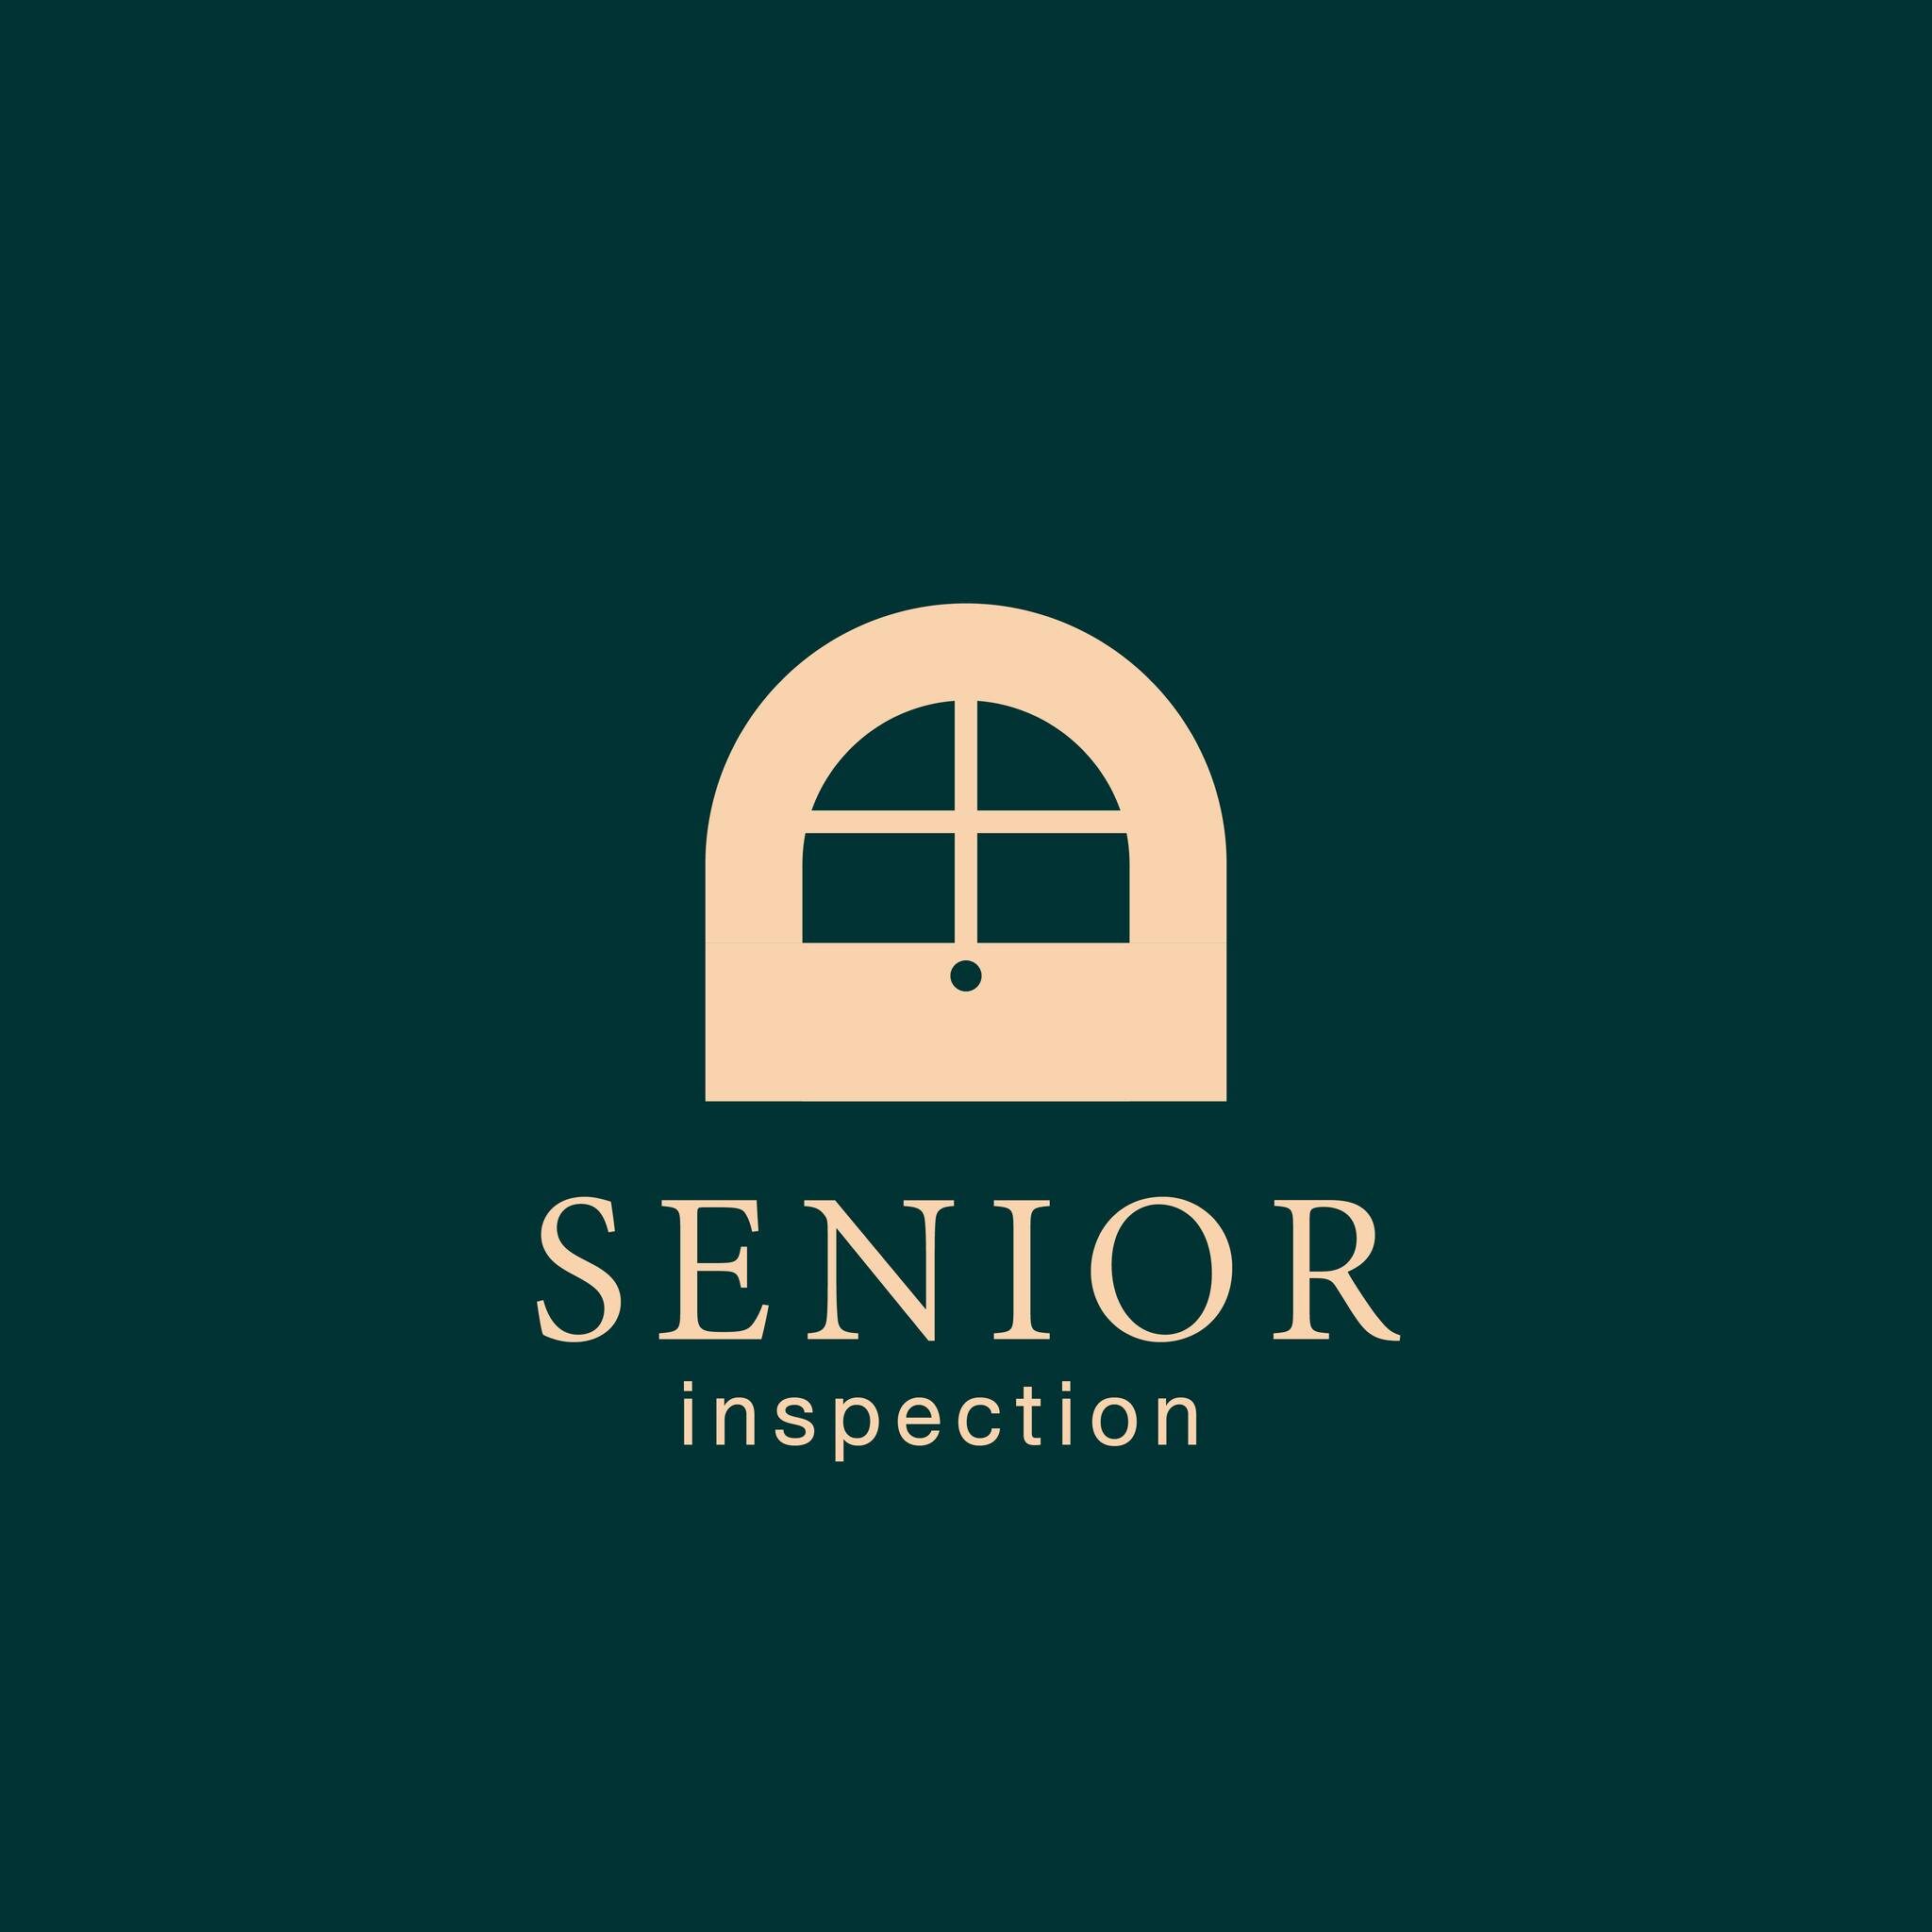 Senior inspection